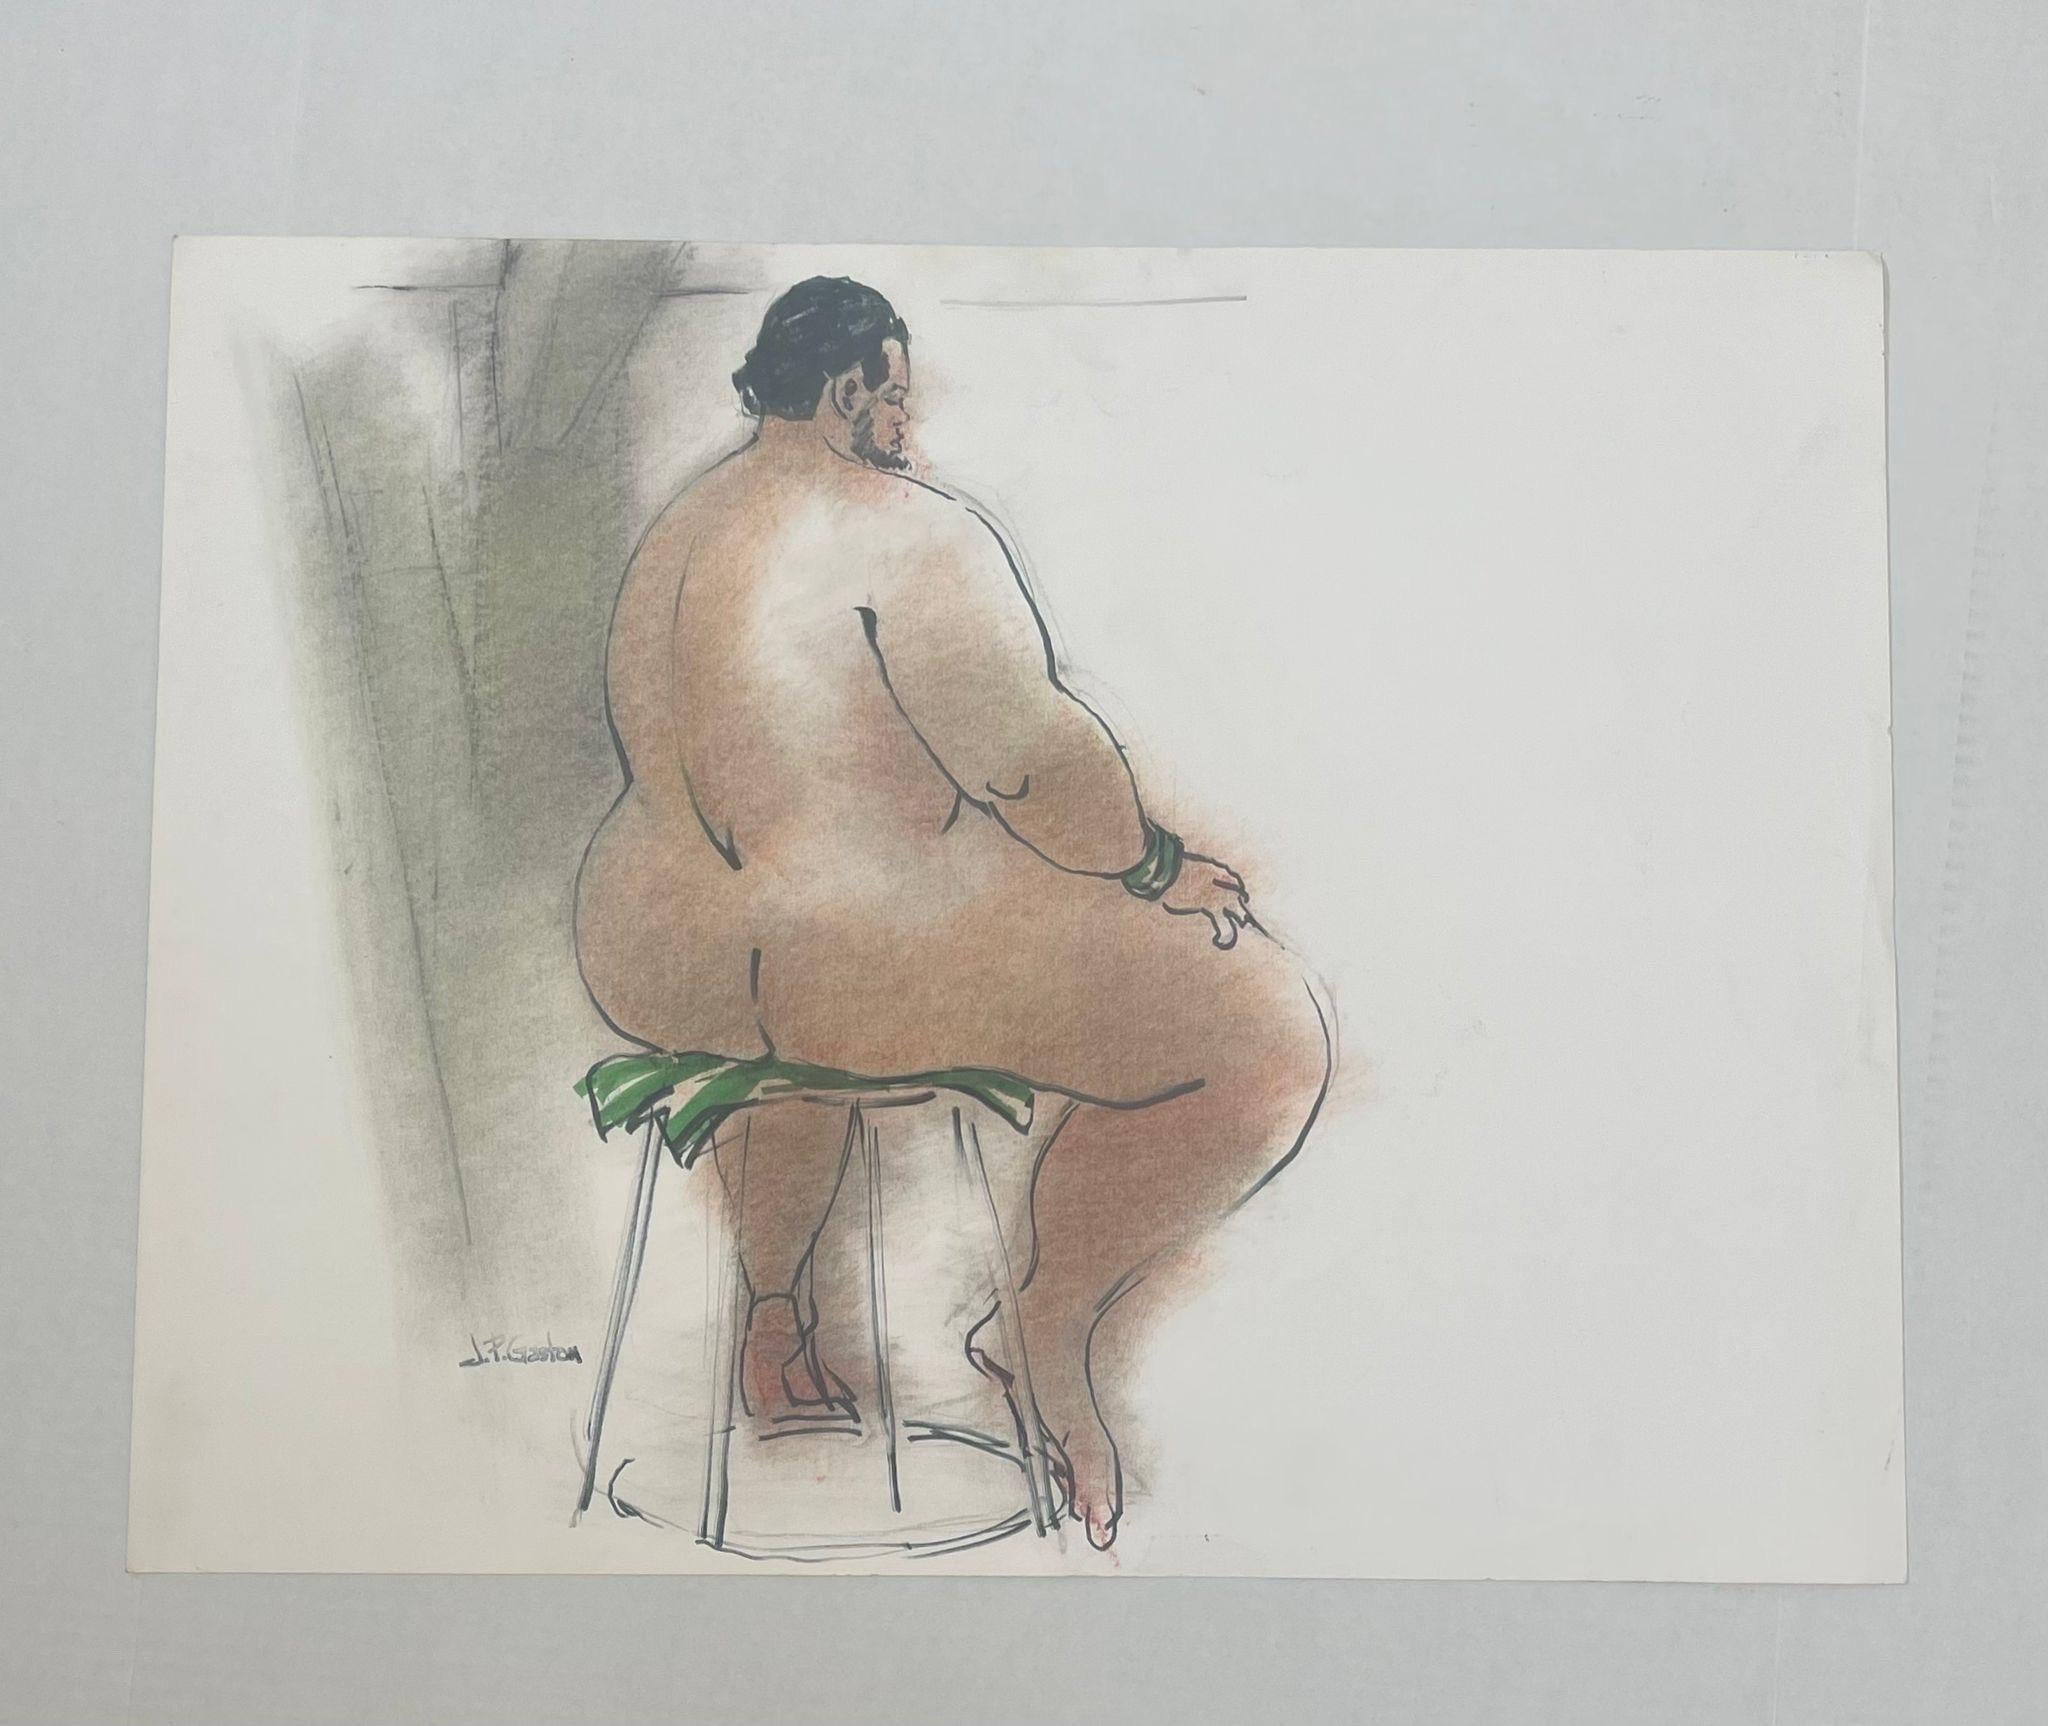 Étude vintage d'un portrait de nu d'un homme assis.semble être un pastel sur papier.signé JP Gaston comme sur la photo. Usure et déchirure compatibles avec l'âge.

Dimensions. 26 L ; 20 H